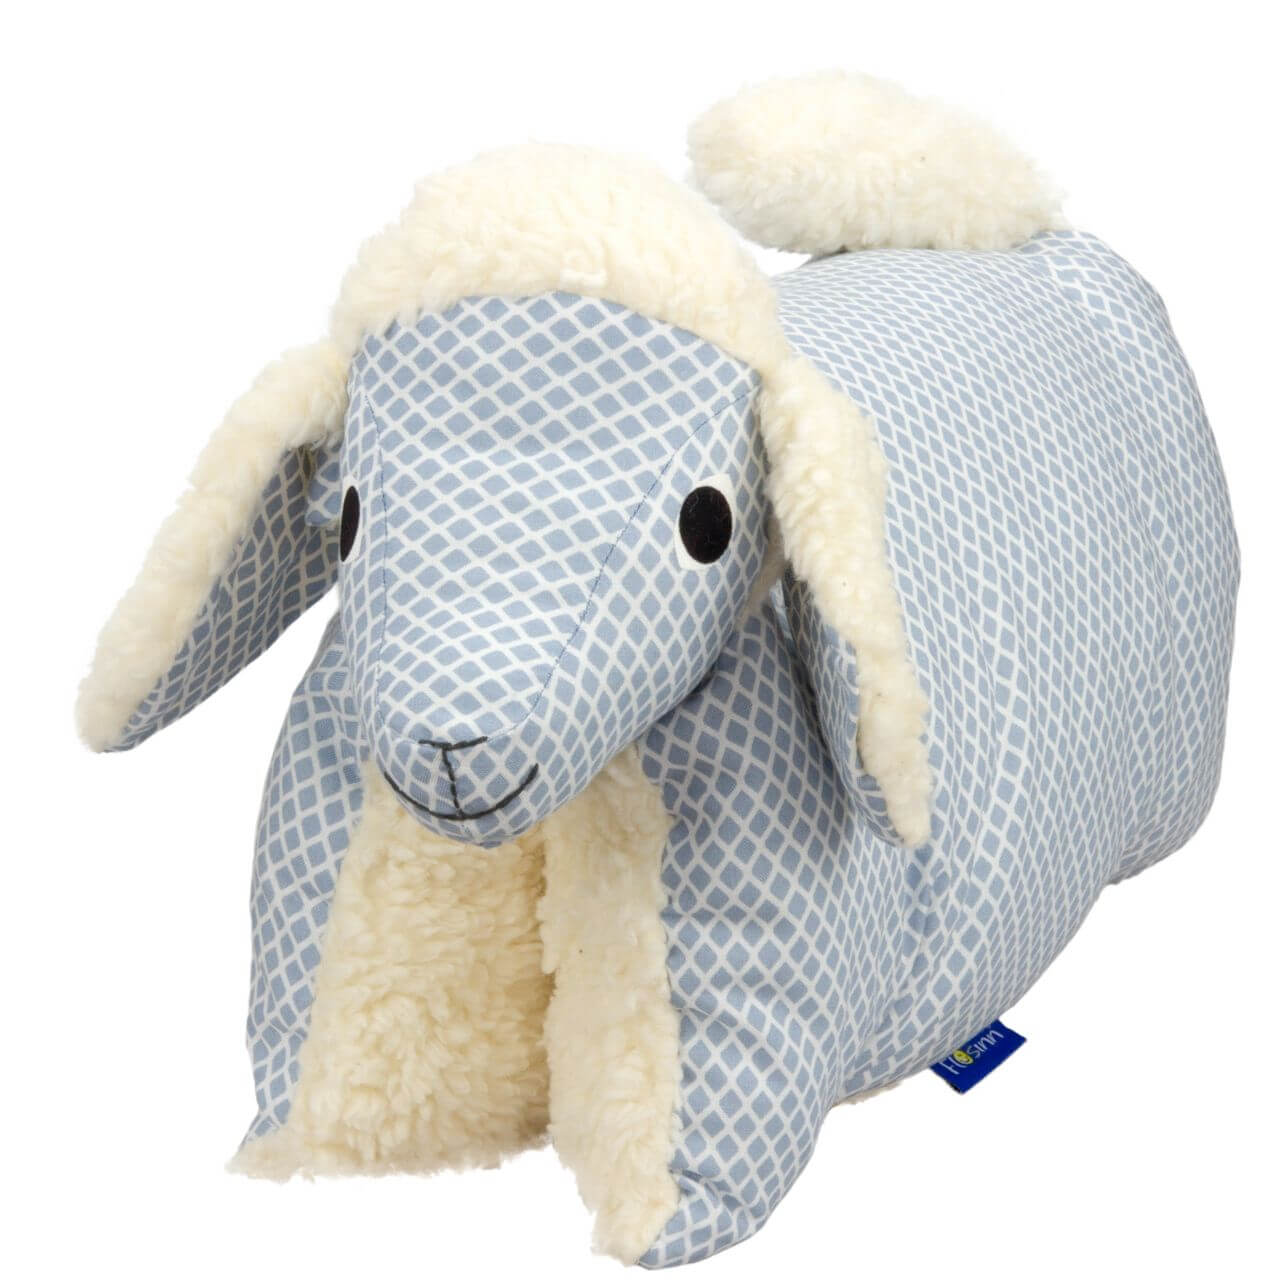 Freisteller eines Kissens, was auch als Kuscheltier genutzt werden kann, in Form eines Lamms.